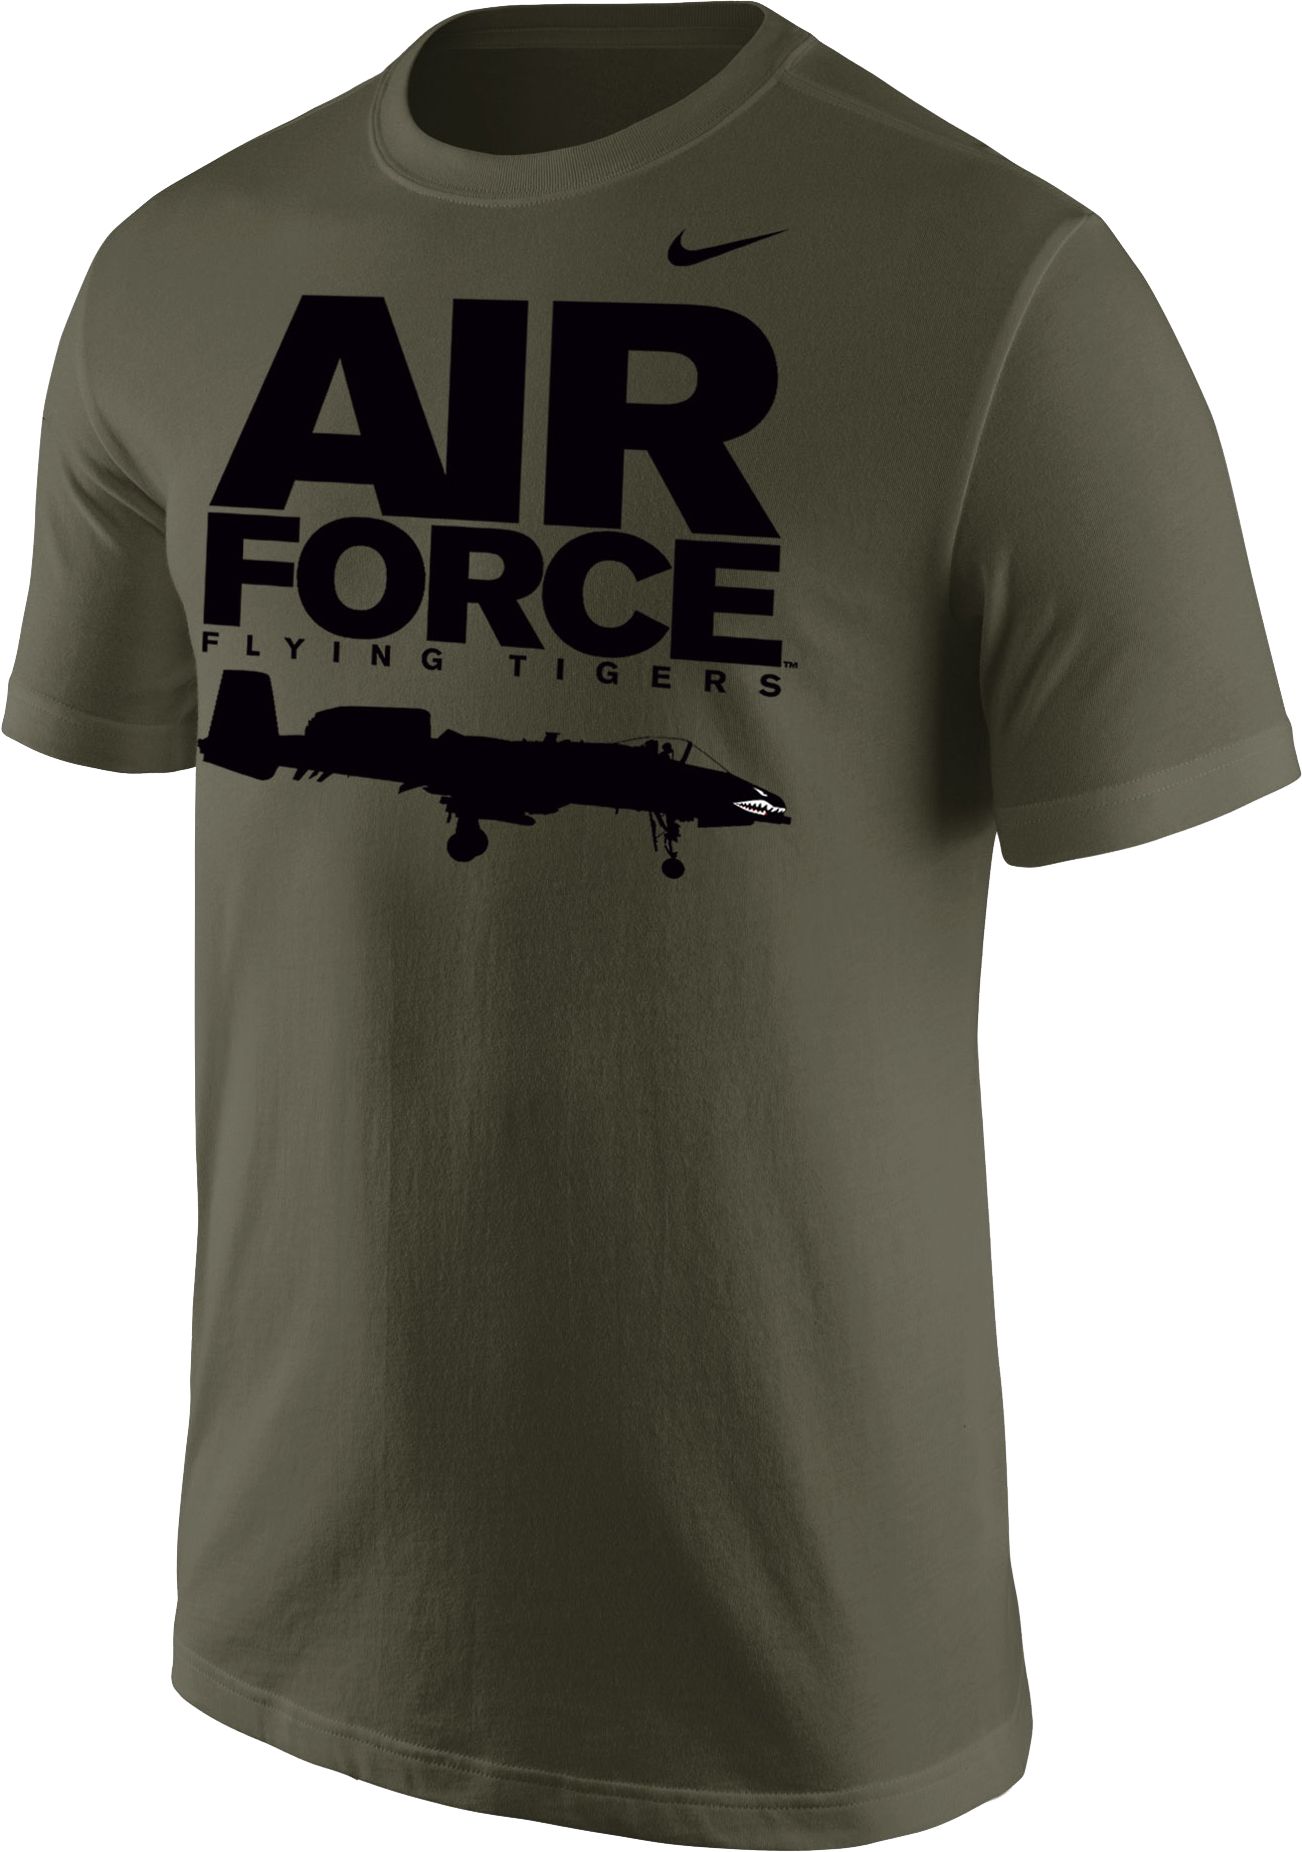 air force sweatshirt nike